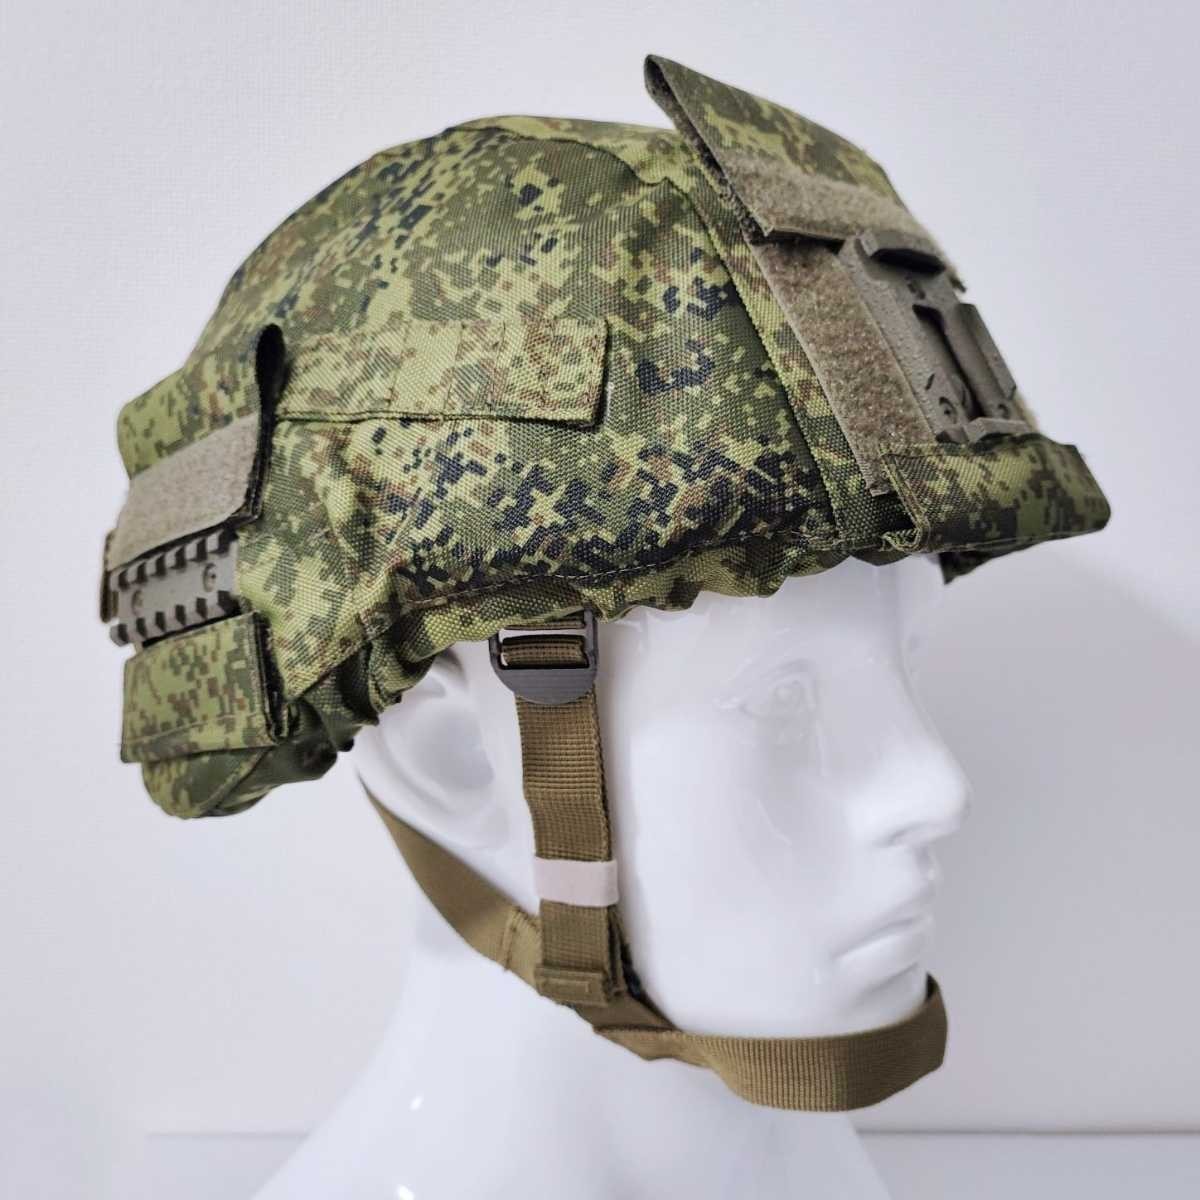 【Yes.Sir shop】 Россия  ...  оборудование  6b47  шлем  6b51  подкладка   комплект    новый товар  неиспользуемый 